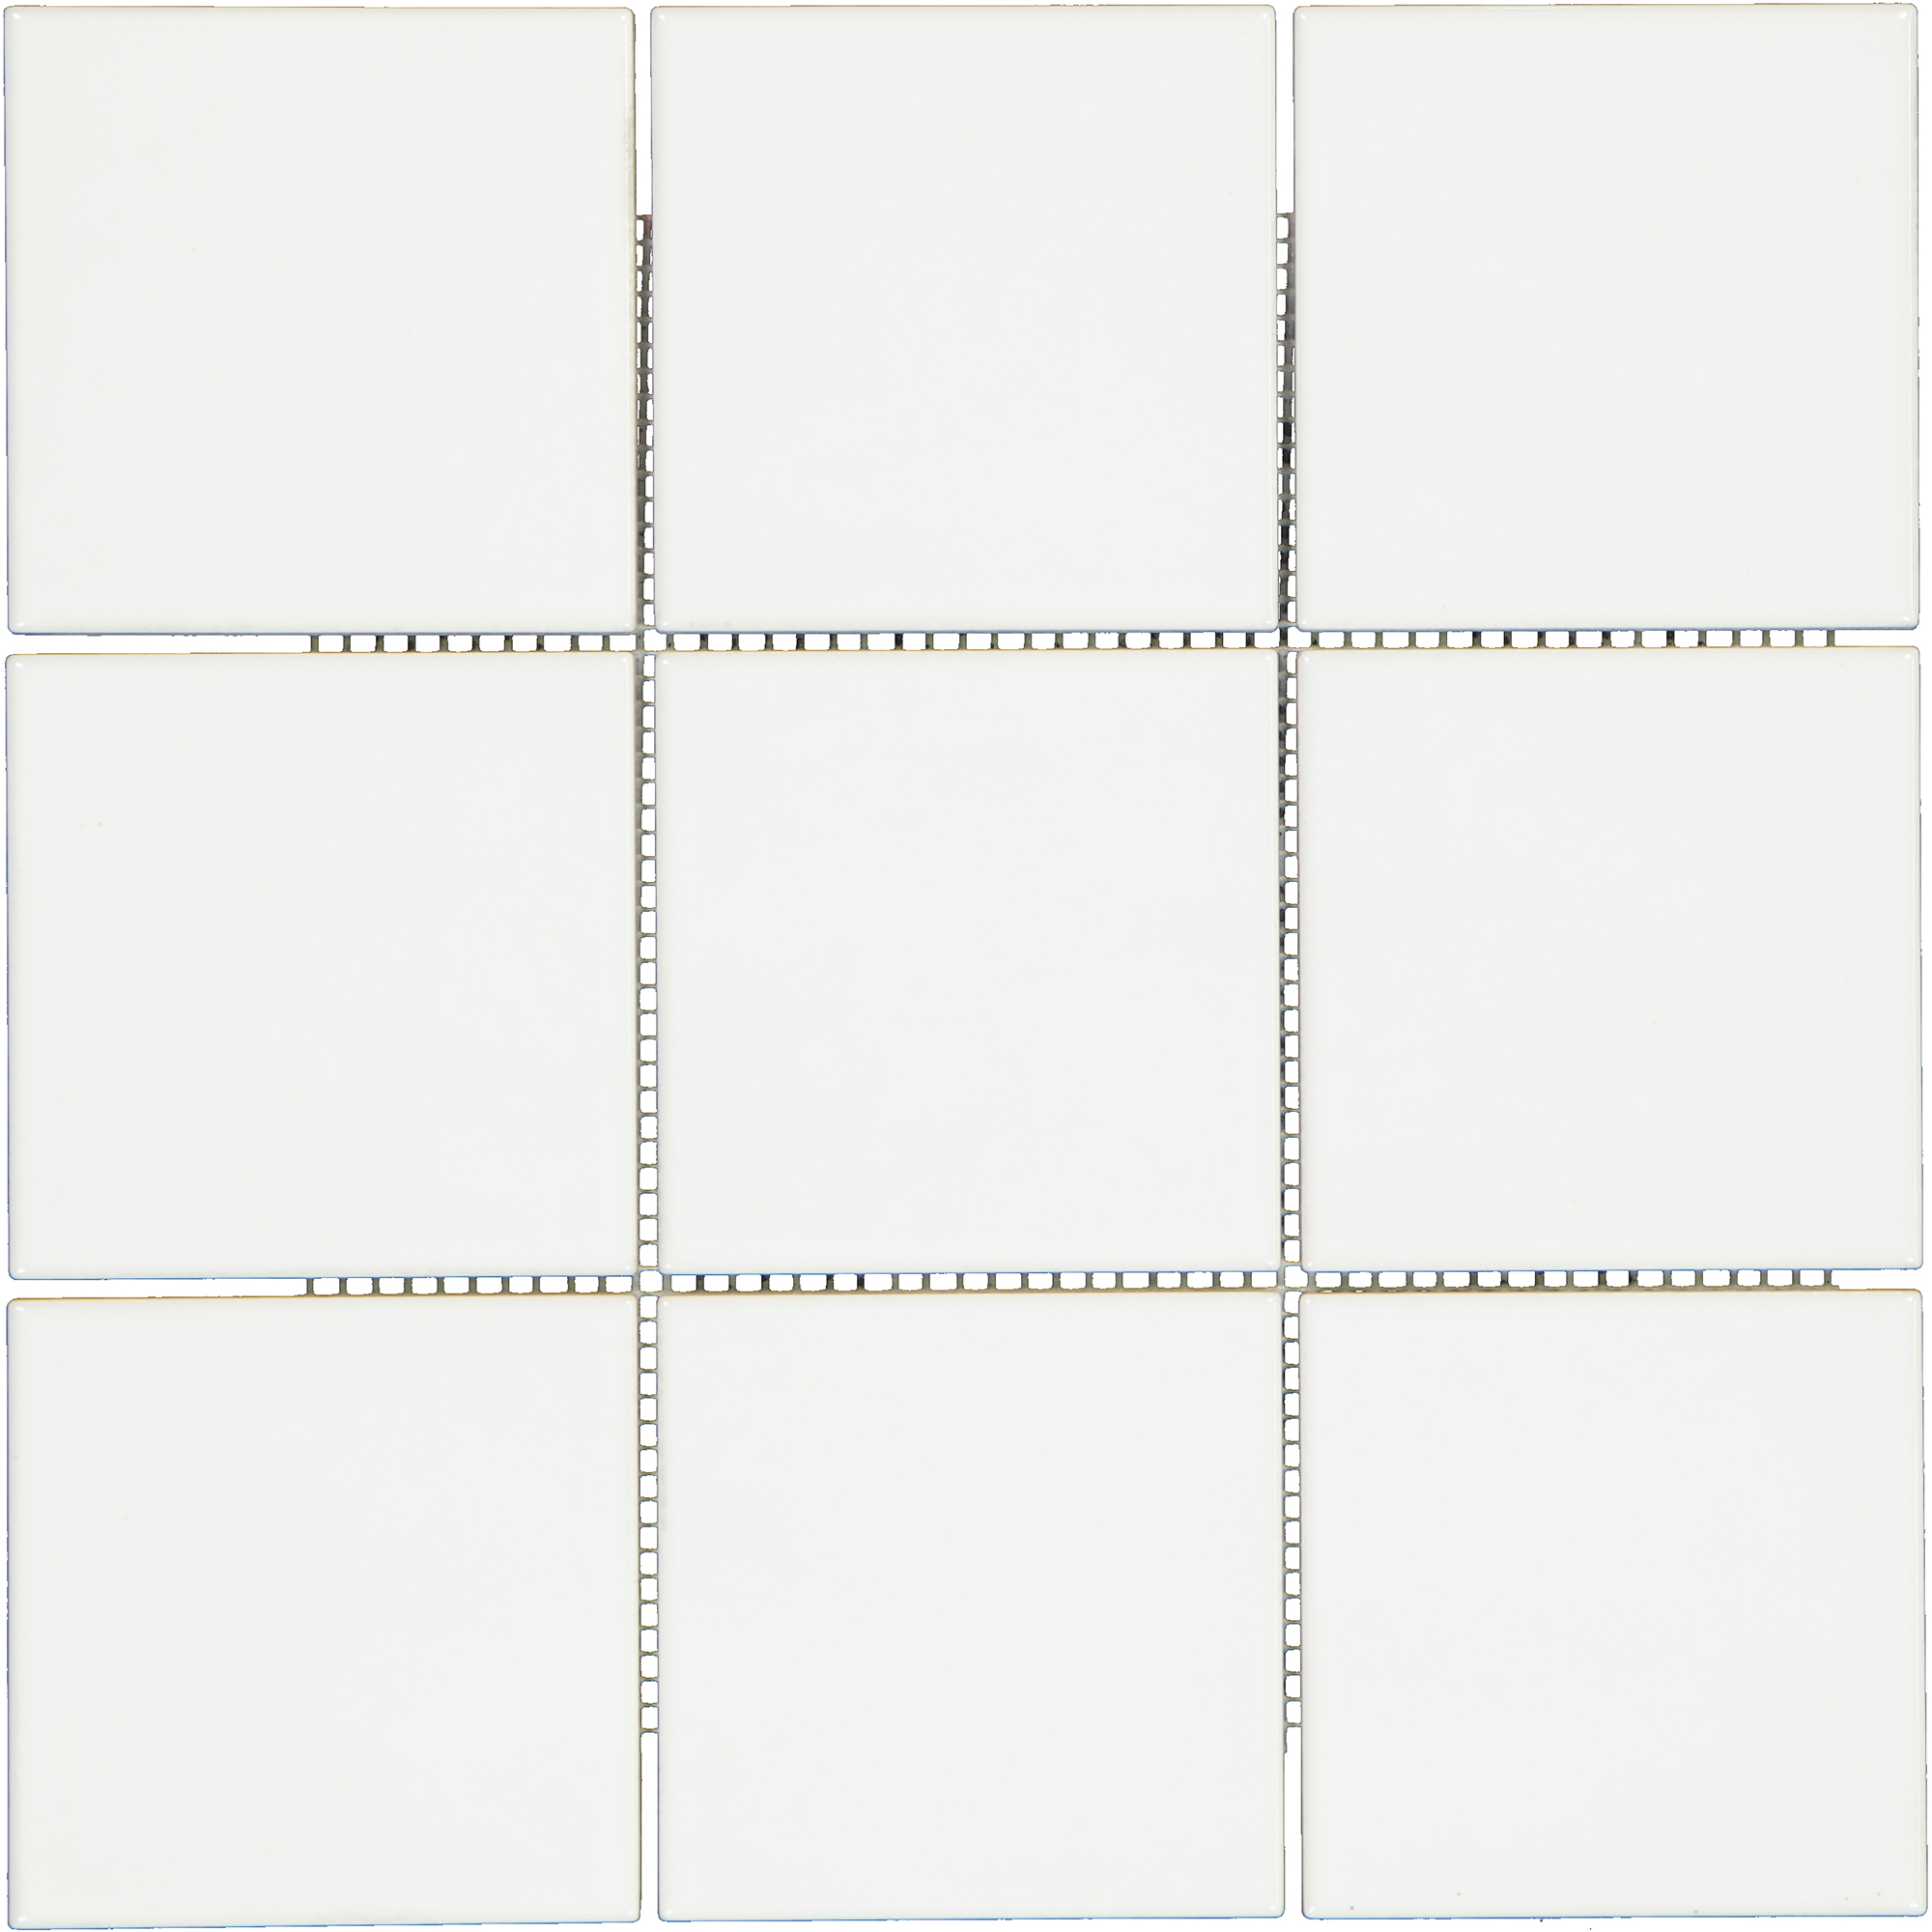 Mosaikfliese 'Selektiv' Steingut weiß glänzend 30 x 30 cm + product picture